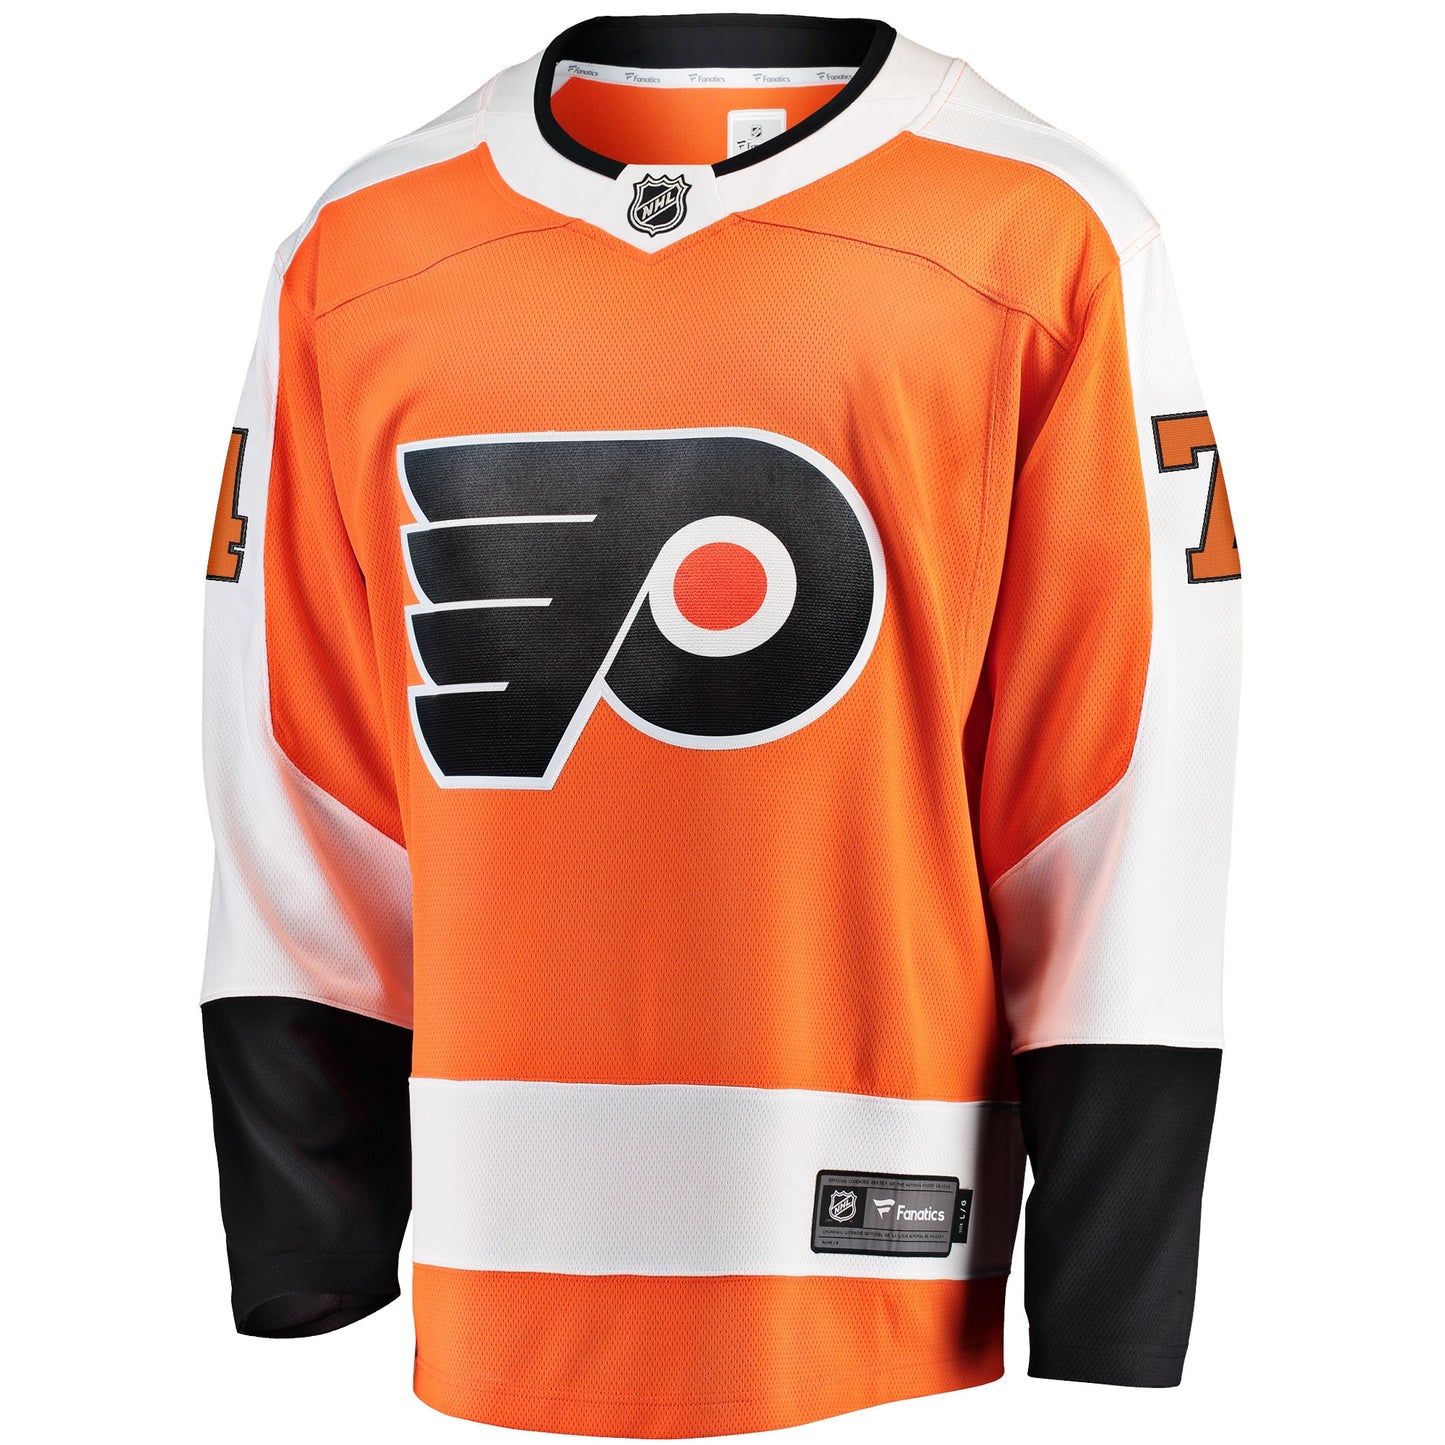 Owen Tippett Philadelphia Flyers Fanatics Branded Home Breakaway Player Jersey - Orange